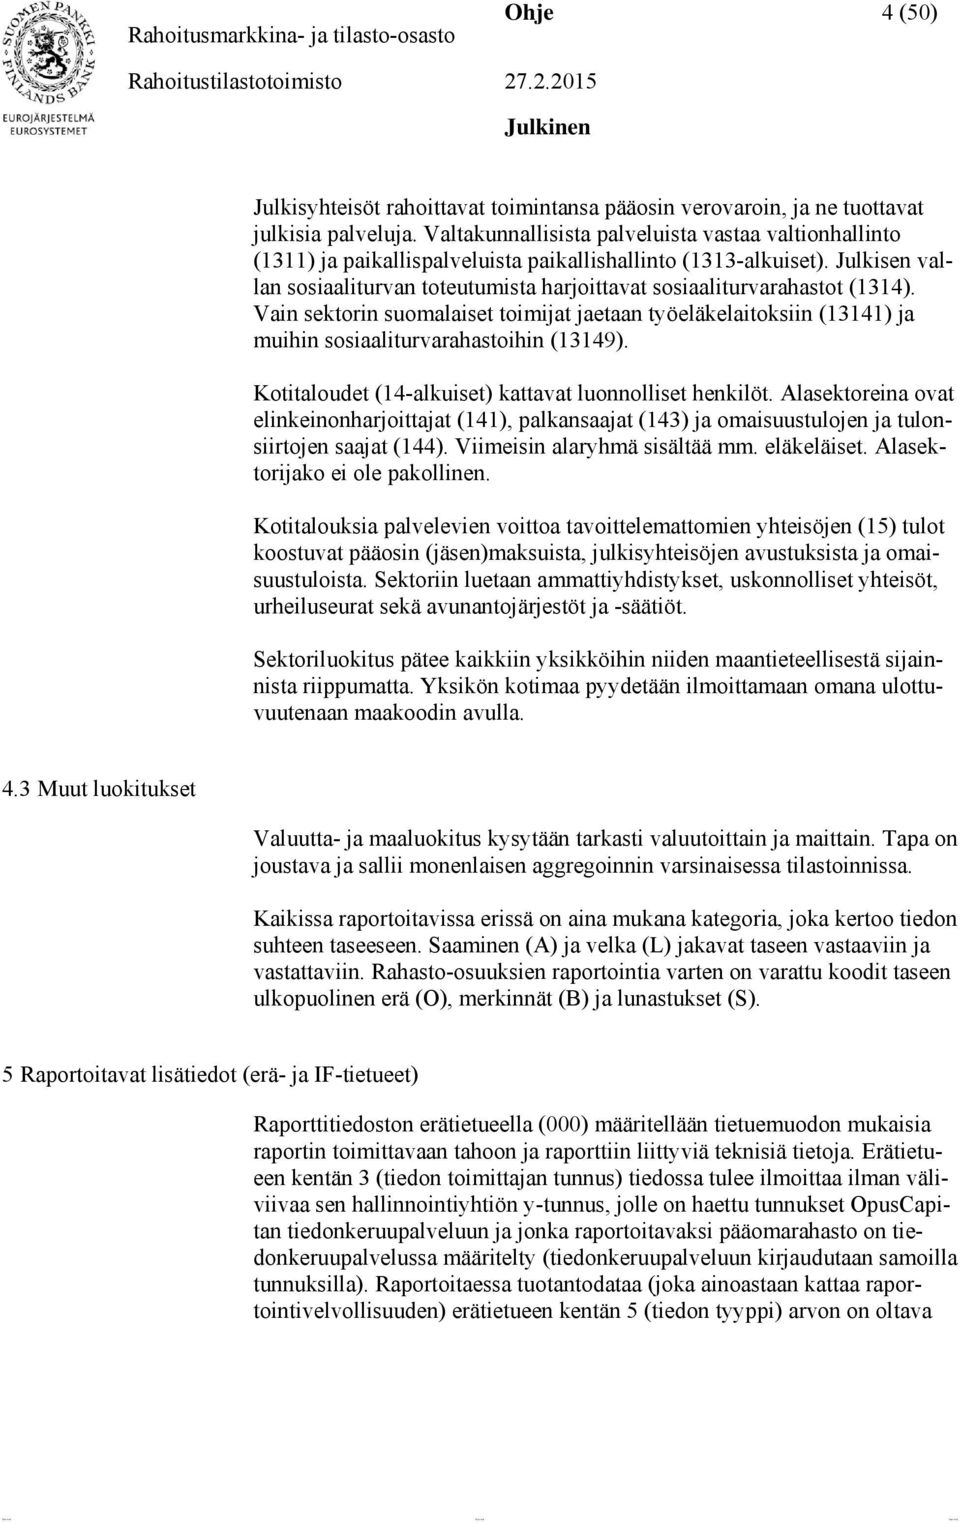 Julkisen vallan sosiaaliturvan toteutumista harjoittavat sosiaaliturvarahastot (1314). Vain sektorin suomalaiset toimijat jaetaan työeläkelaitoksiin (13141) ja muihin sosiaaliturvarahastoihin (13149).